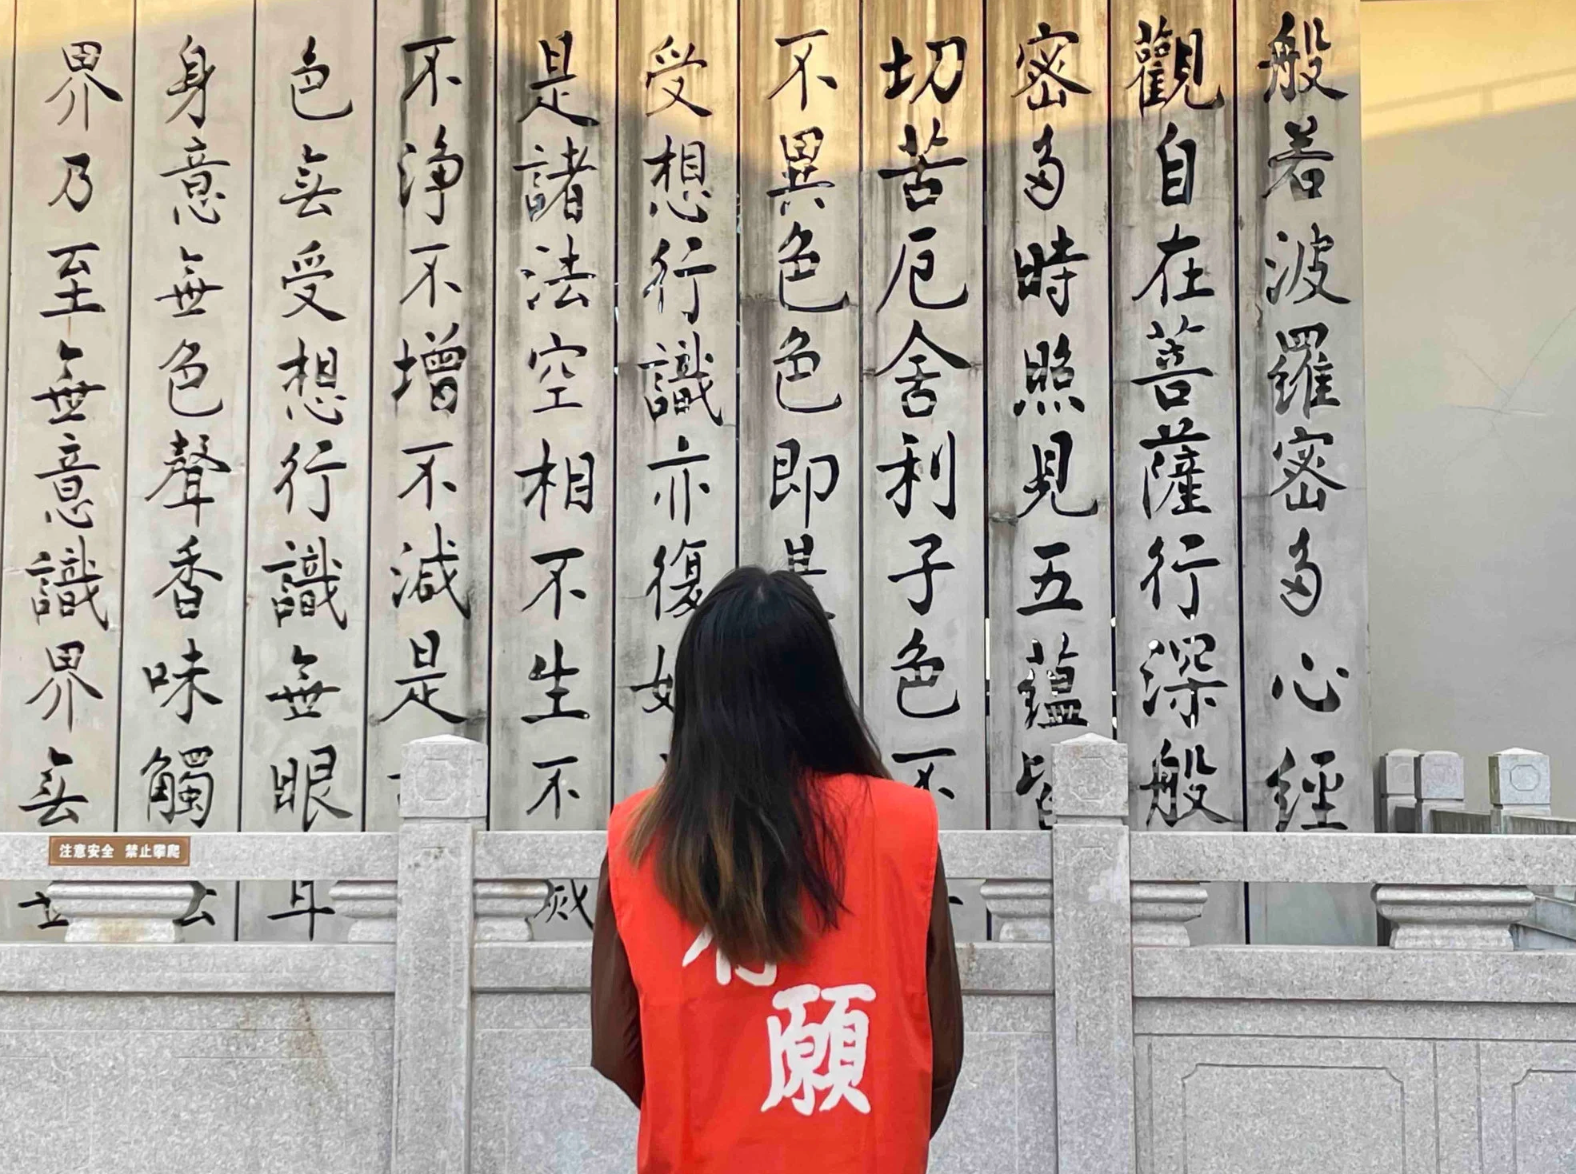 Trung Quốc: Người trẻ kiệt sức, quyết định bỏ việc, ồ ạt kéo đến chùa ở trong vài tháng để tìm 'sự an yên' - Ảnh 4.